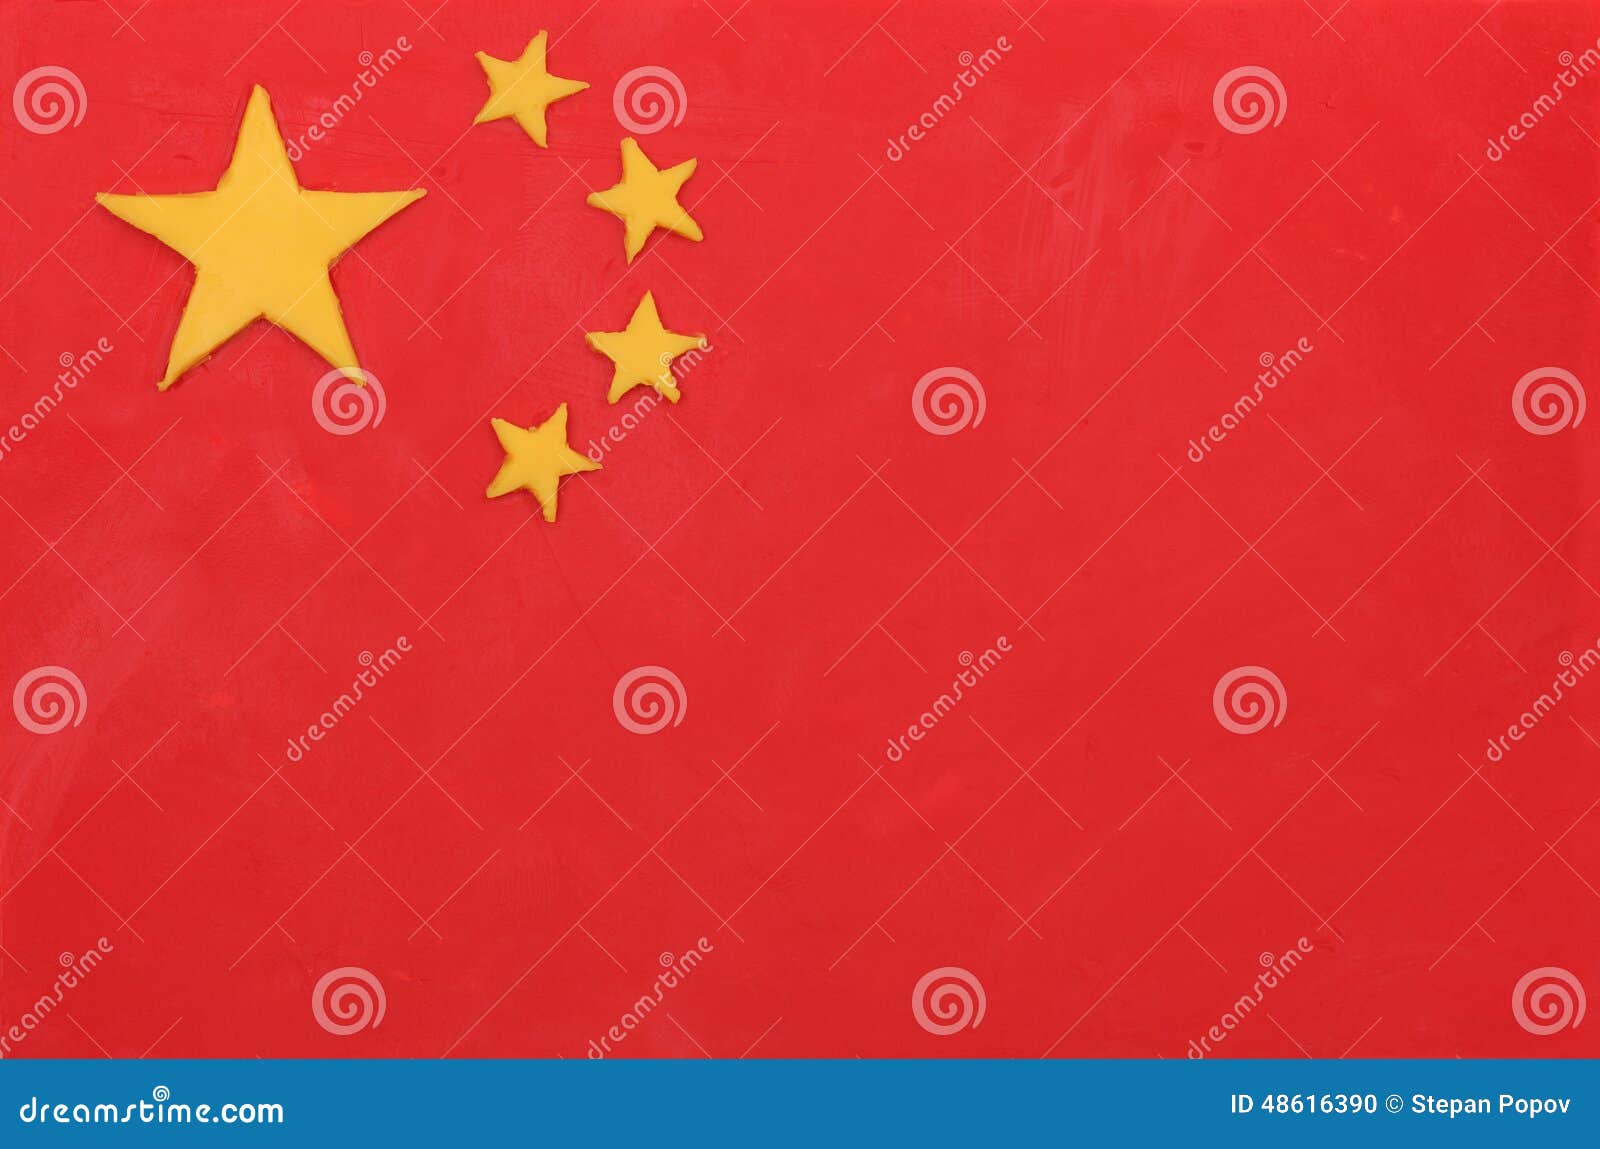 Сколько звезд на флаге третьей по размеру. Военный флаг Китая. Звезды на флаге Китая. Флаг Китая 1900. Флаг Китая до 1949 года.